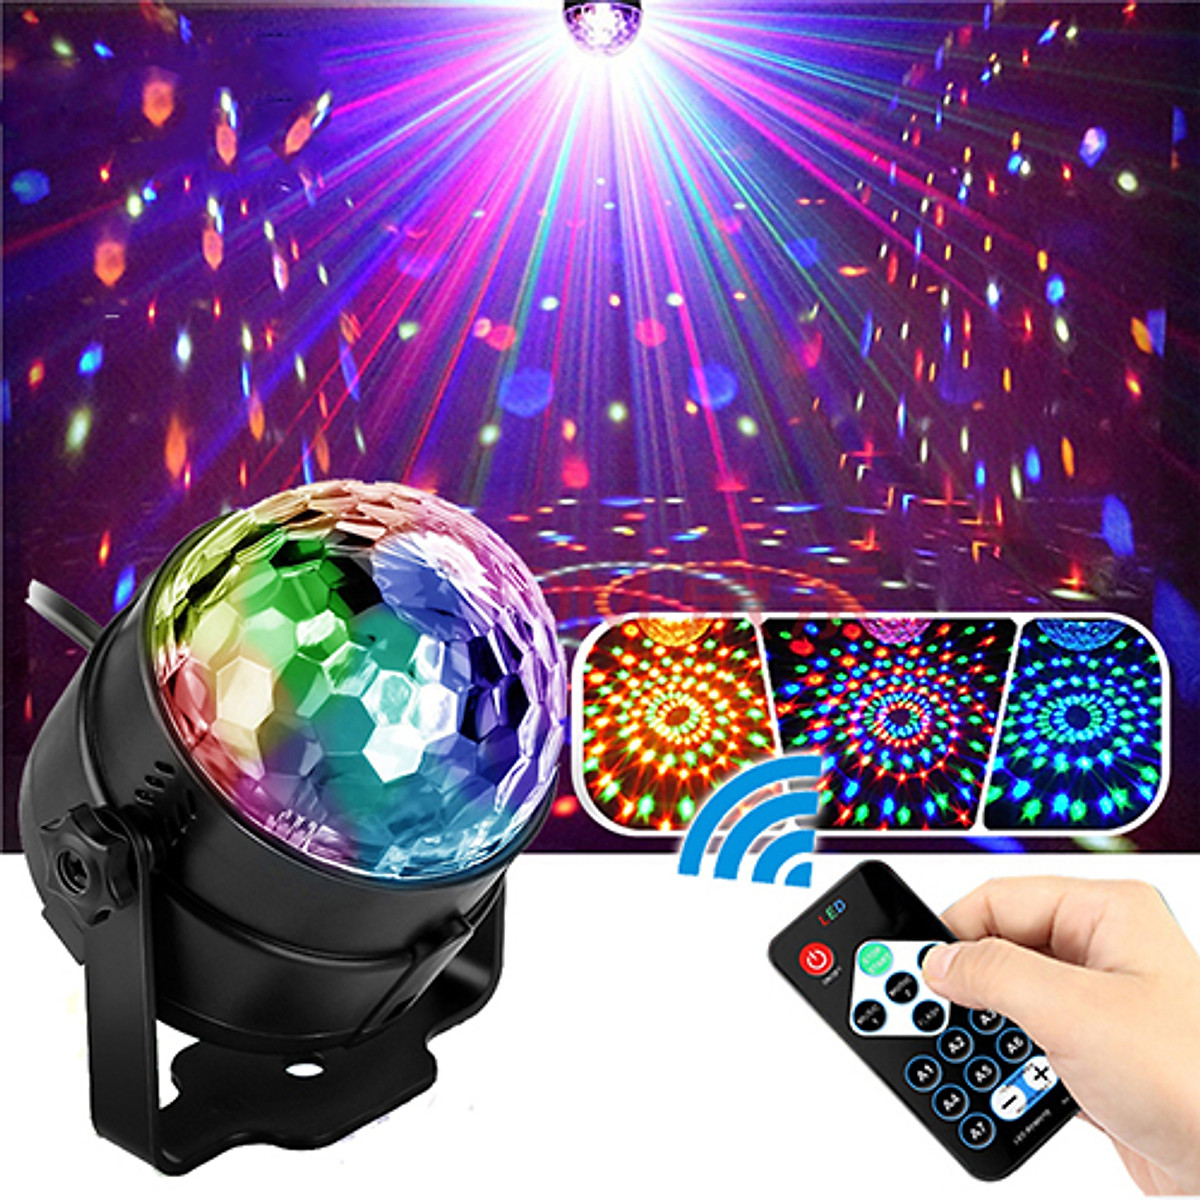 Bạn có muốn mua đèn nháy LED hiệu ứng 7 màu để tạo ra không gian vui tươi, sôi động không? Tấm ảnh này sẽ giúp bạn phát hiện những sản phẩm phù hợp nhất, giúp bạn tạo ra các bữa tiệc, dịp lễ nhộn nhịp hơn.